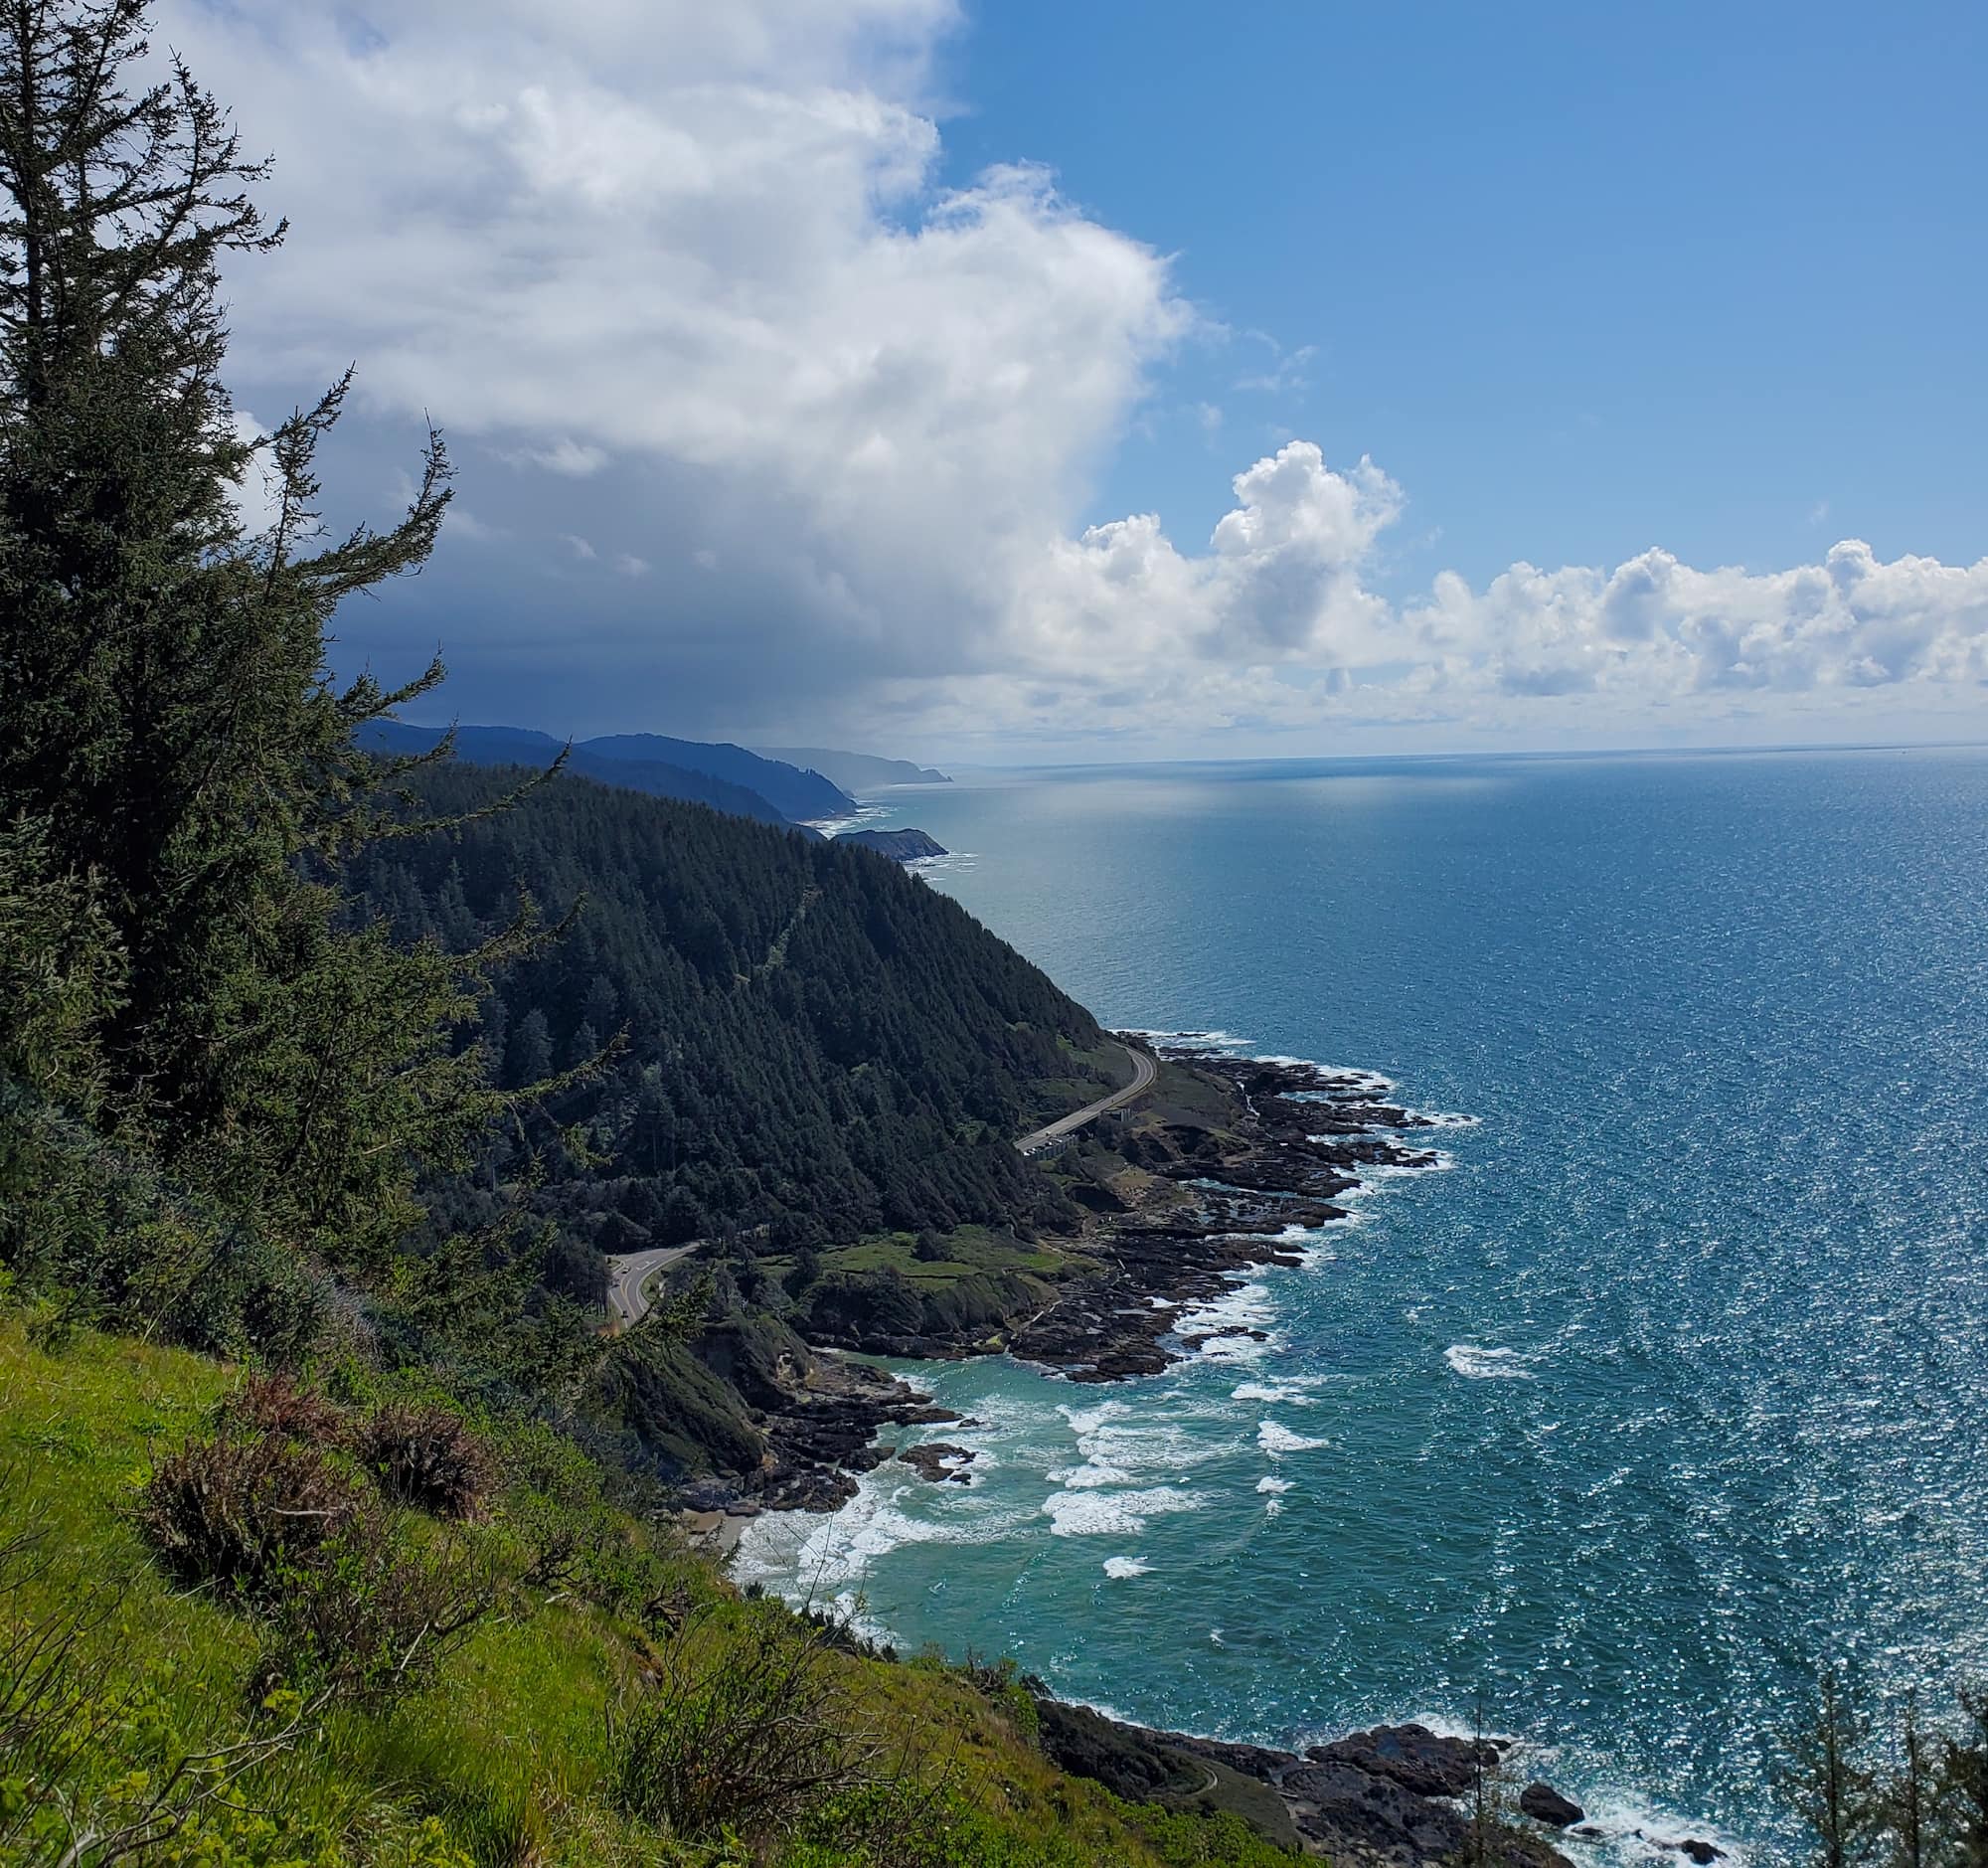 Cape Perpetua overlooks the Pacific Ocean